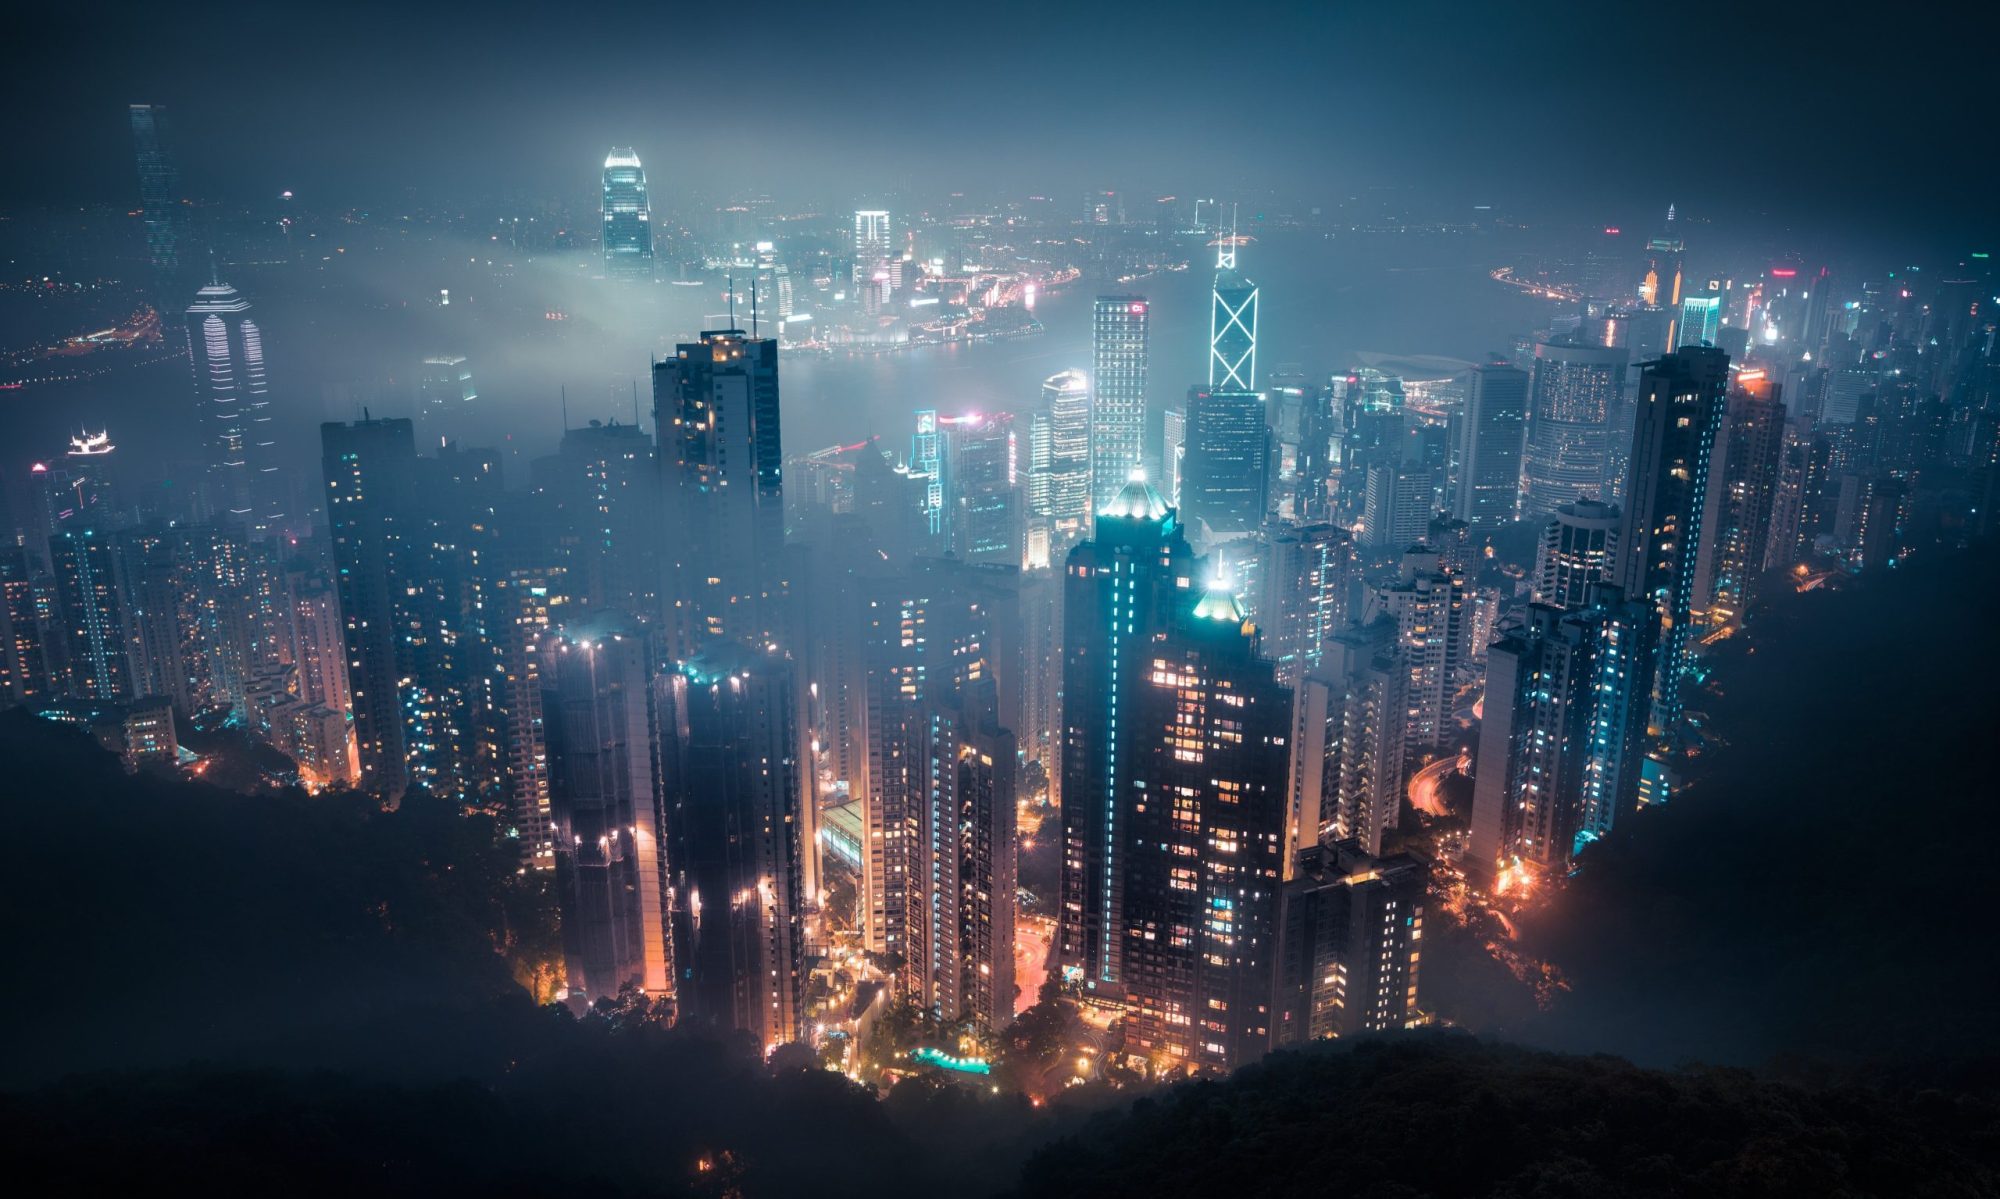 Negara Hong Kong : Informasi, Tips Perjalanan, dan Pesona Kota